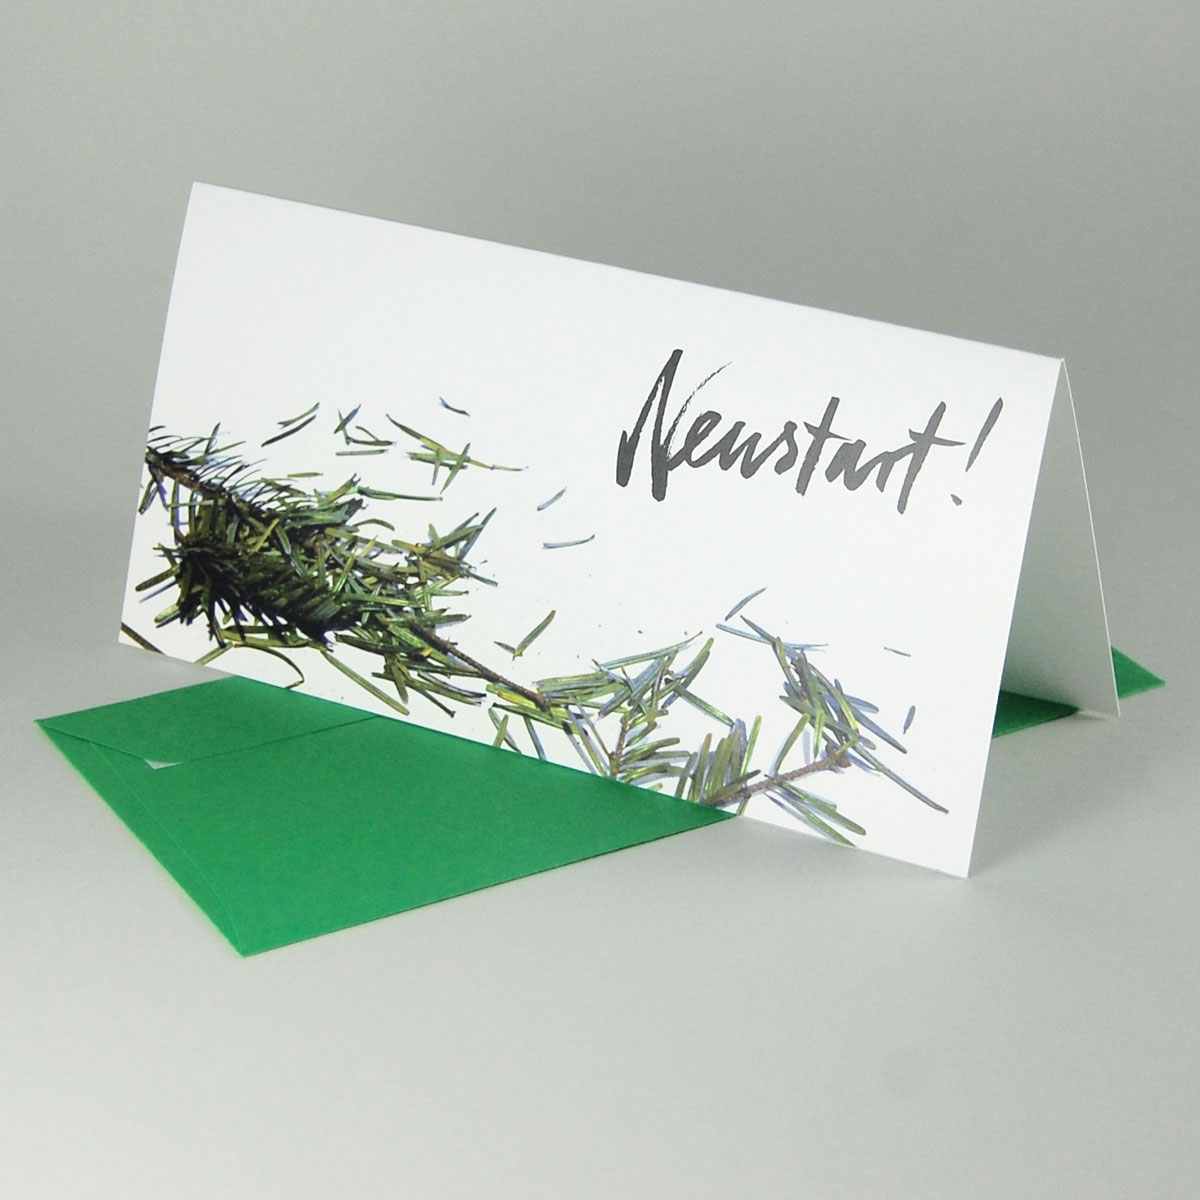 Neustart! originelle Neujahrskarten mit Kehricht und farbigen Umschlägen